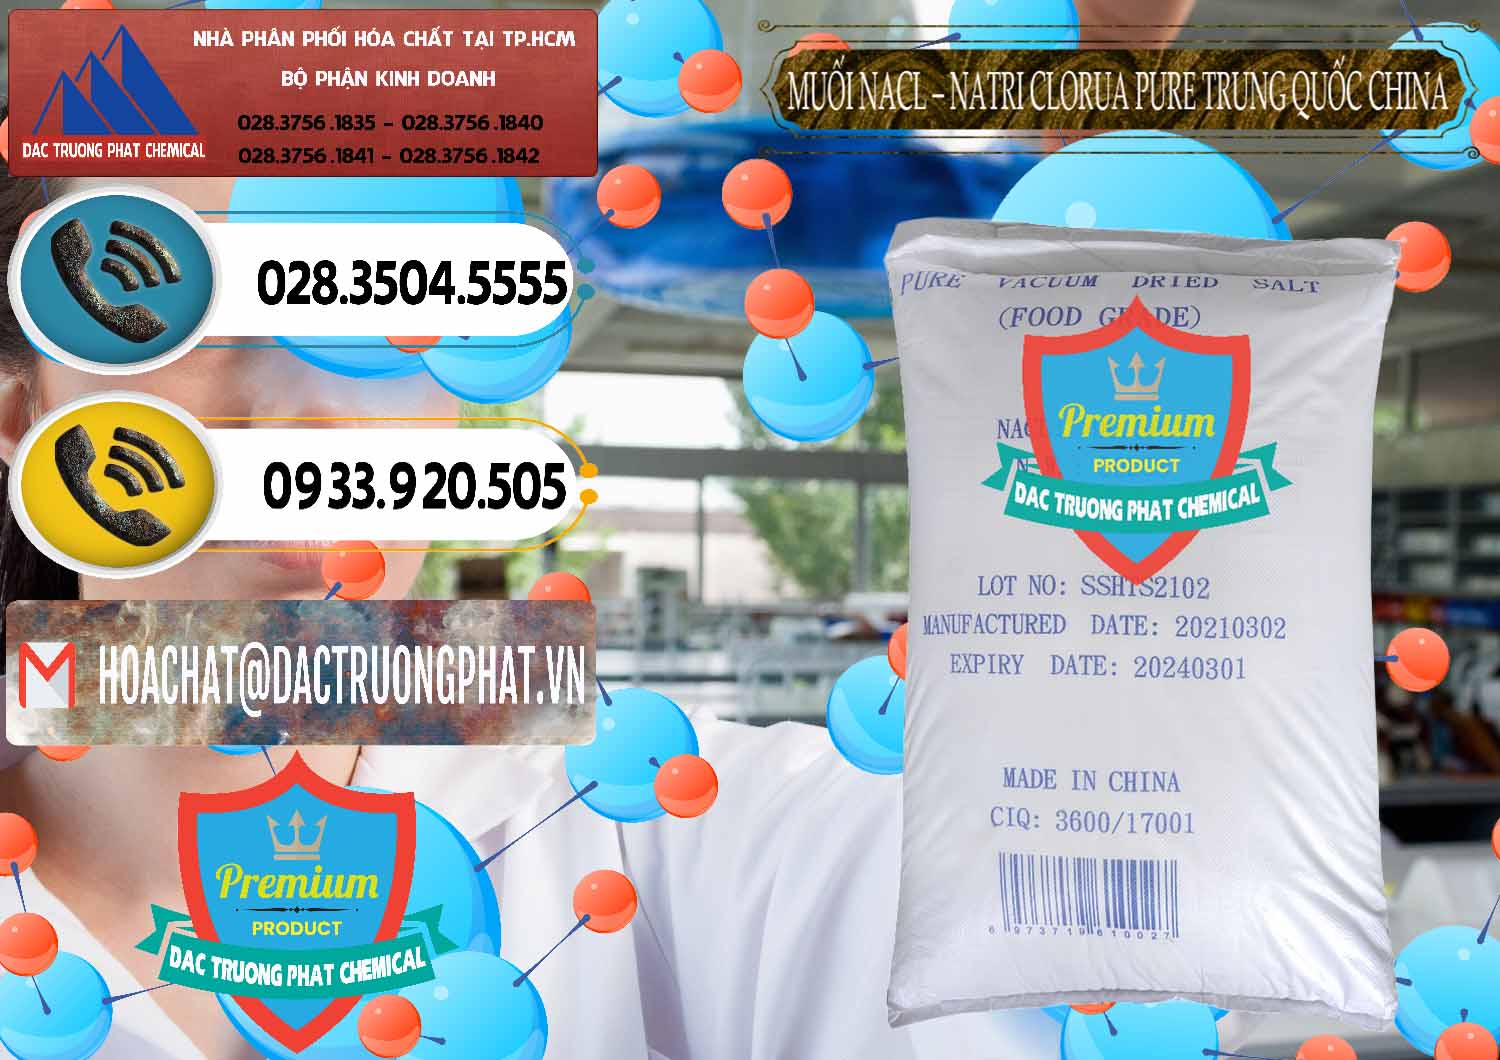 Công ty chuyên bán & phân phối Muối NaCL – Sodium Chloride Pure Trung Quốc China - 0230 - Cung cấp - nhập khẩu hóa chất tại TP.HCM - hoachatdetnhuom.vn